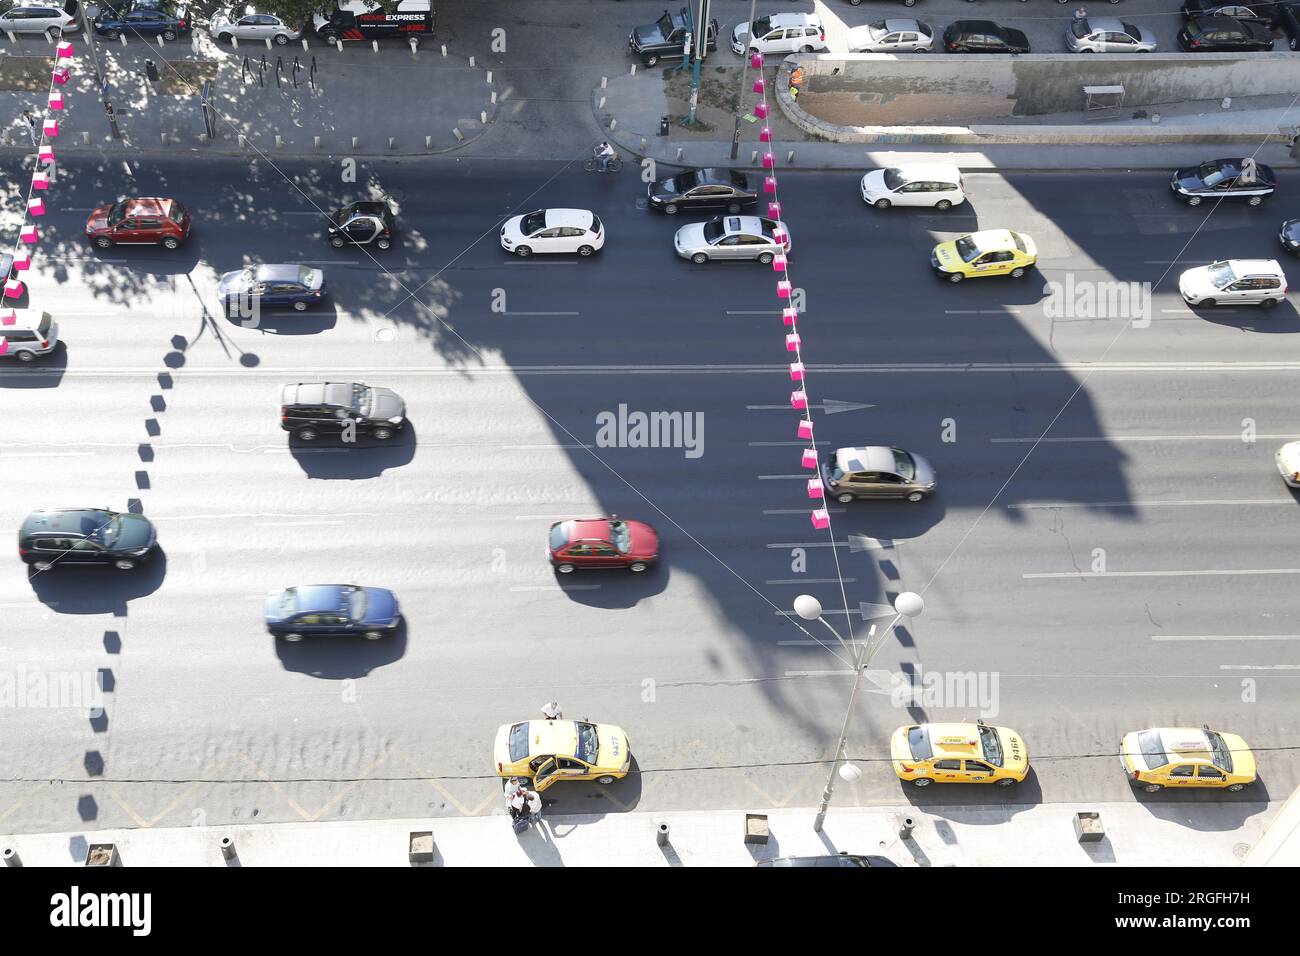 Luftaufnahme von Autos auf einer mehrspurigen Straße, einschließlich hellgelber Taxis Stockfoto